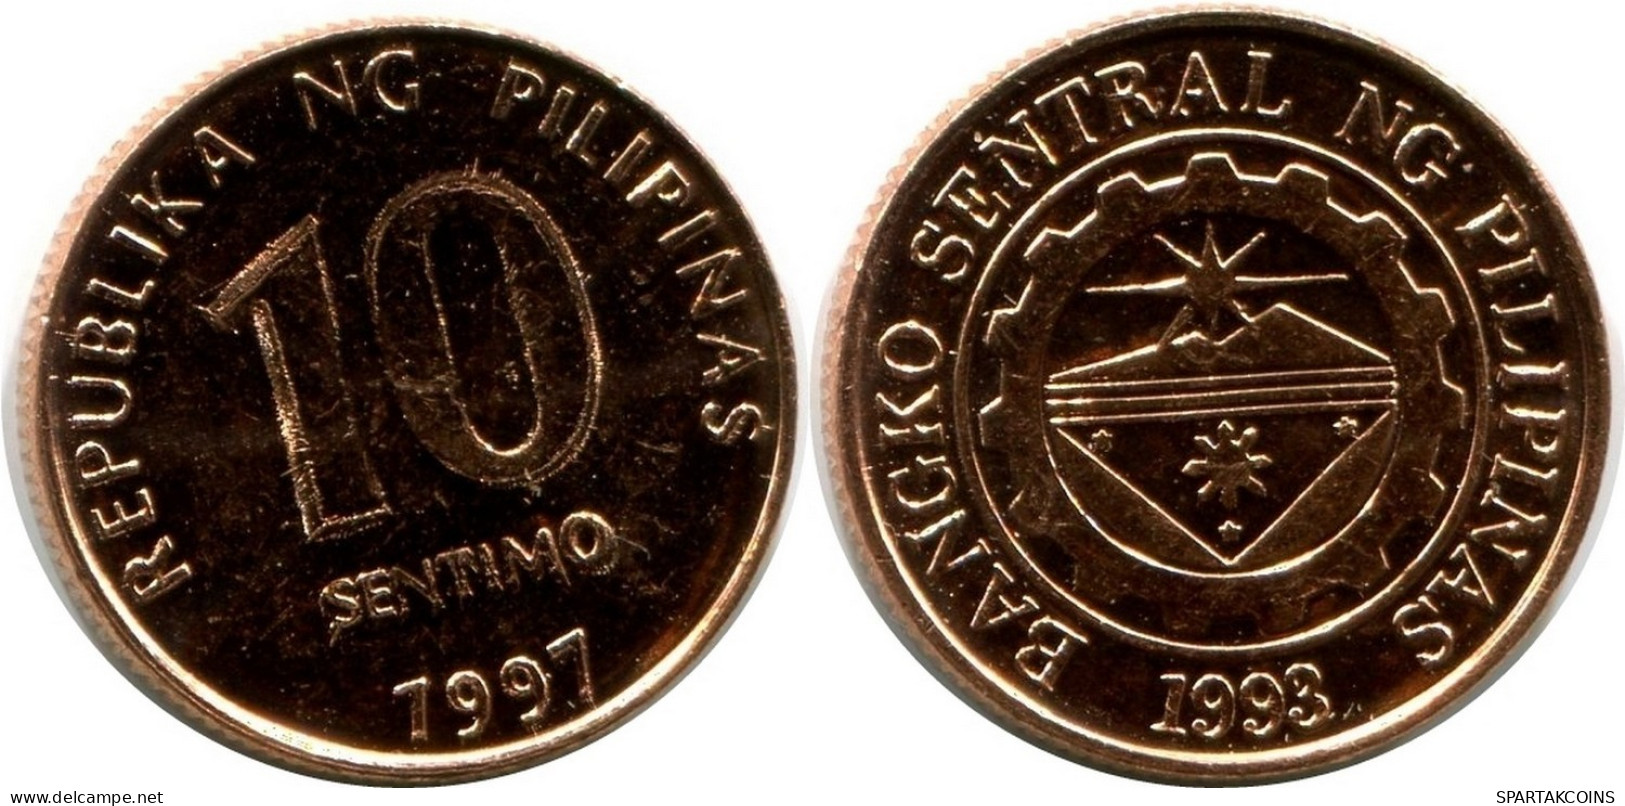 10 CENTIMO 1997 PHILIPPINES UNC Coin #M10059.U.A - Filippine